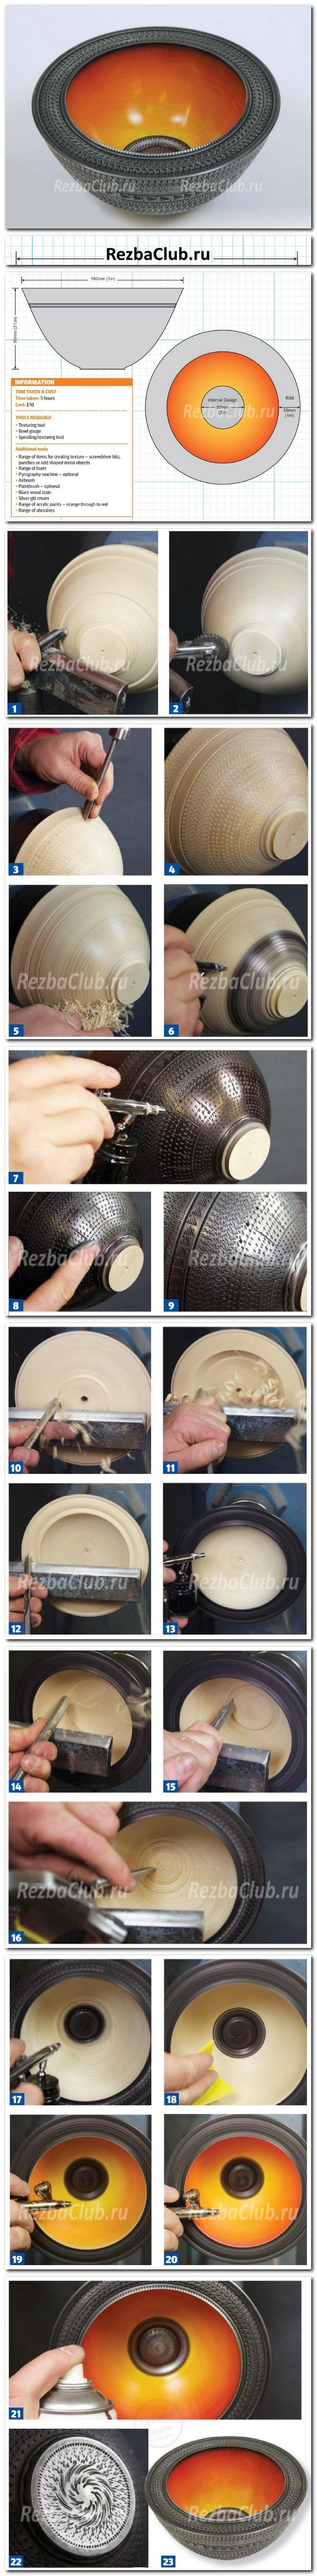 Инструкция как покрыть точеную чашу насечкой, резьбой и покрасить